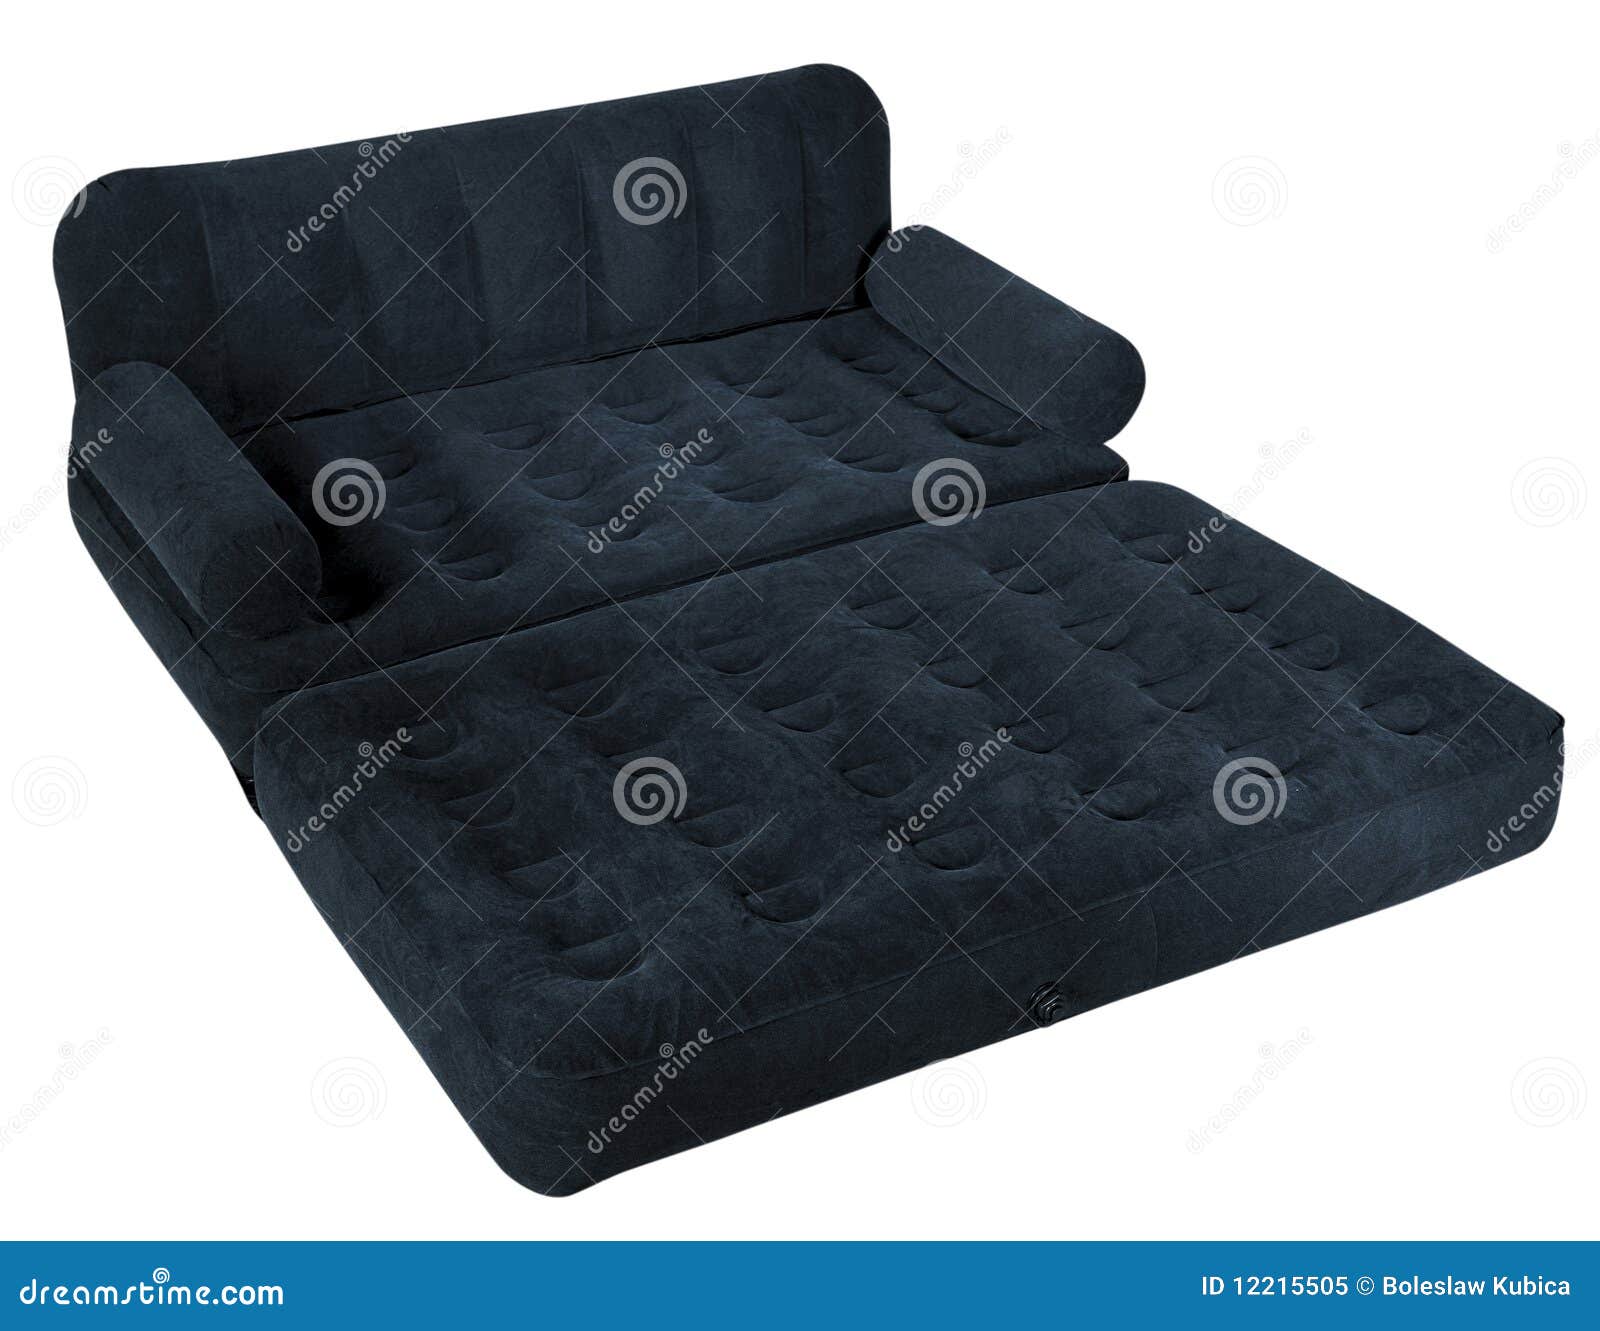 air mattress sofa bed canada